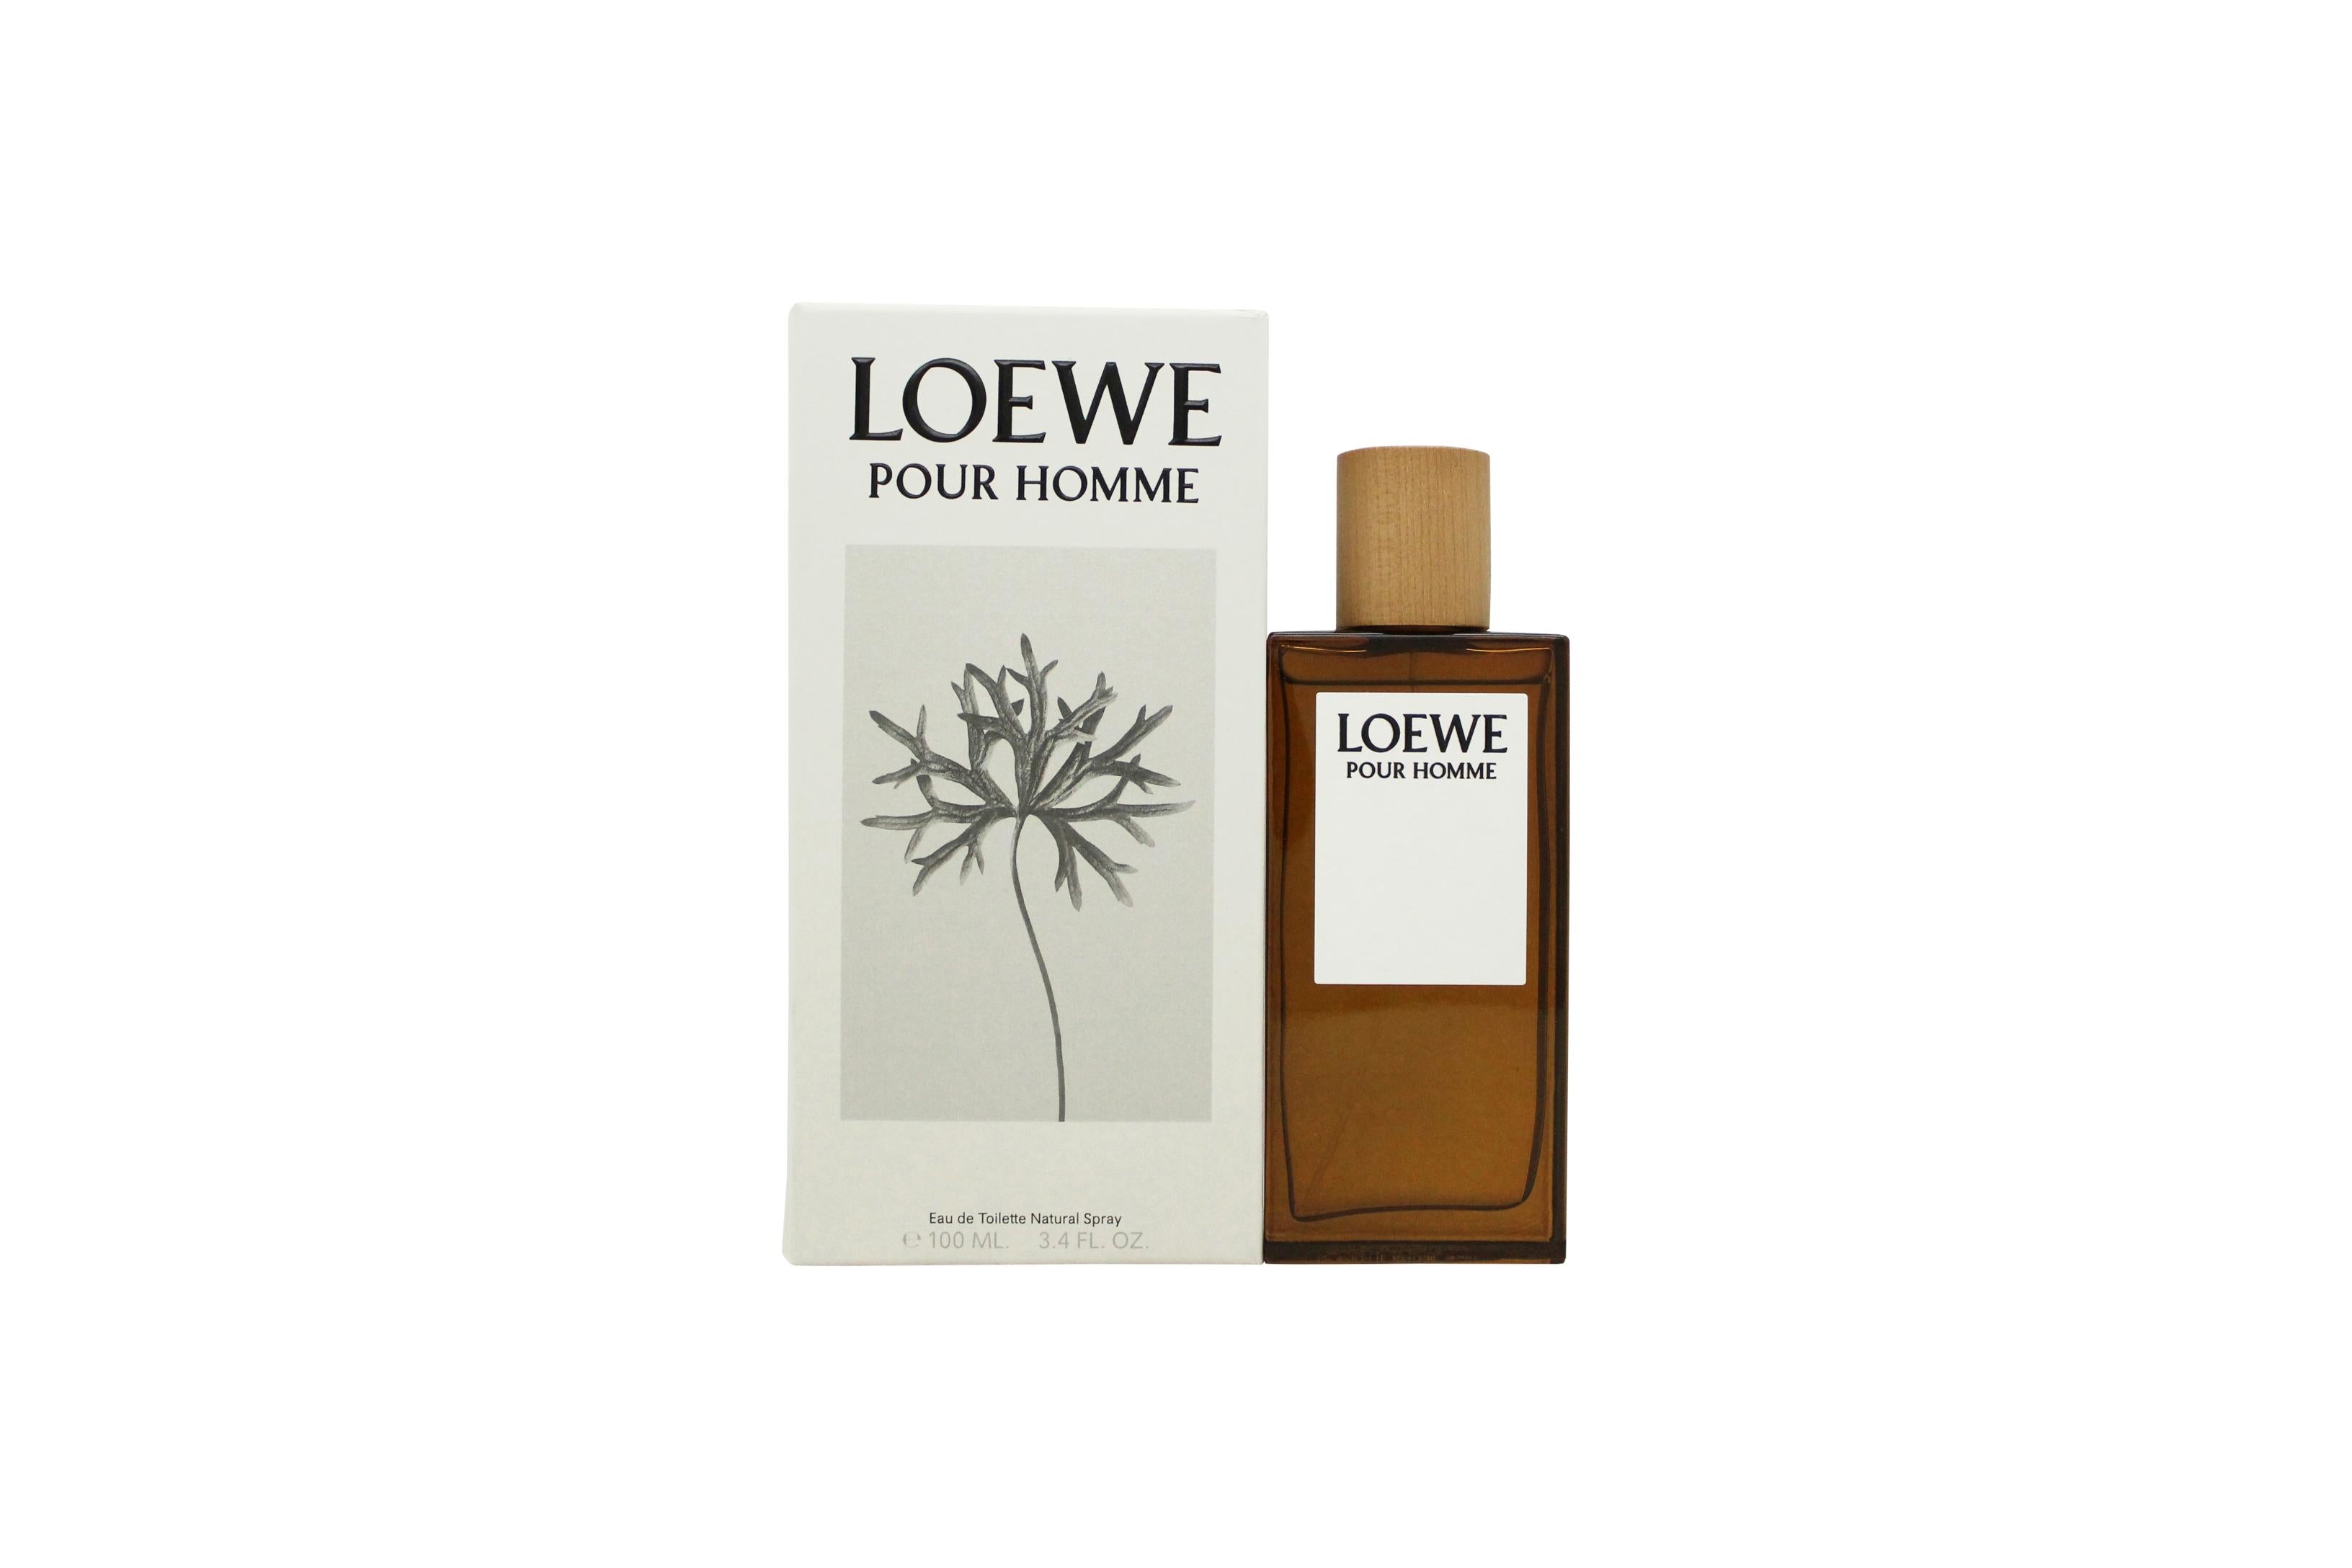 View Loewe Pour Homme Eau de Toilette 100ml Spray information